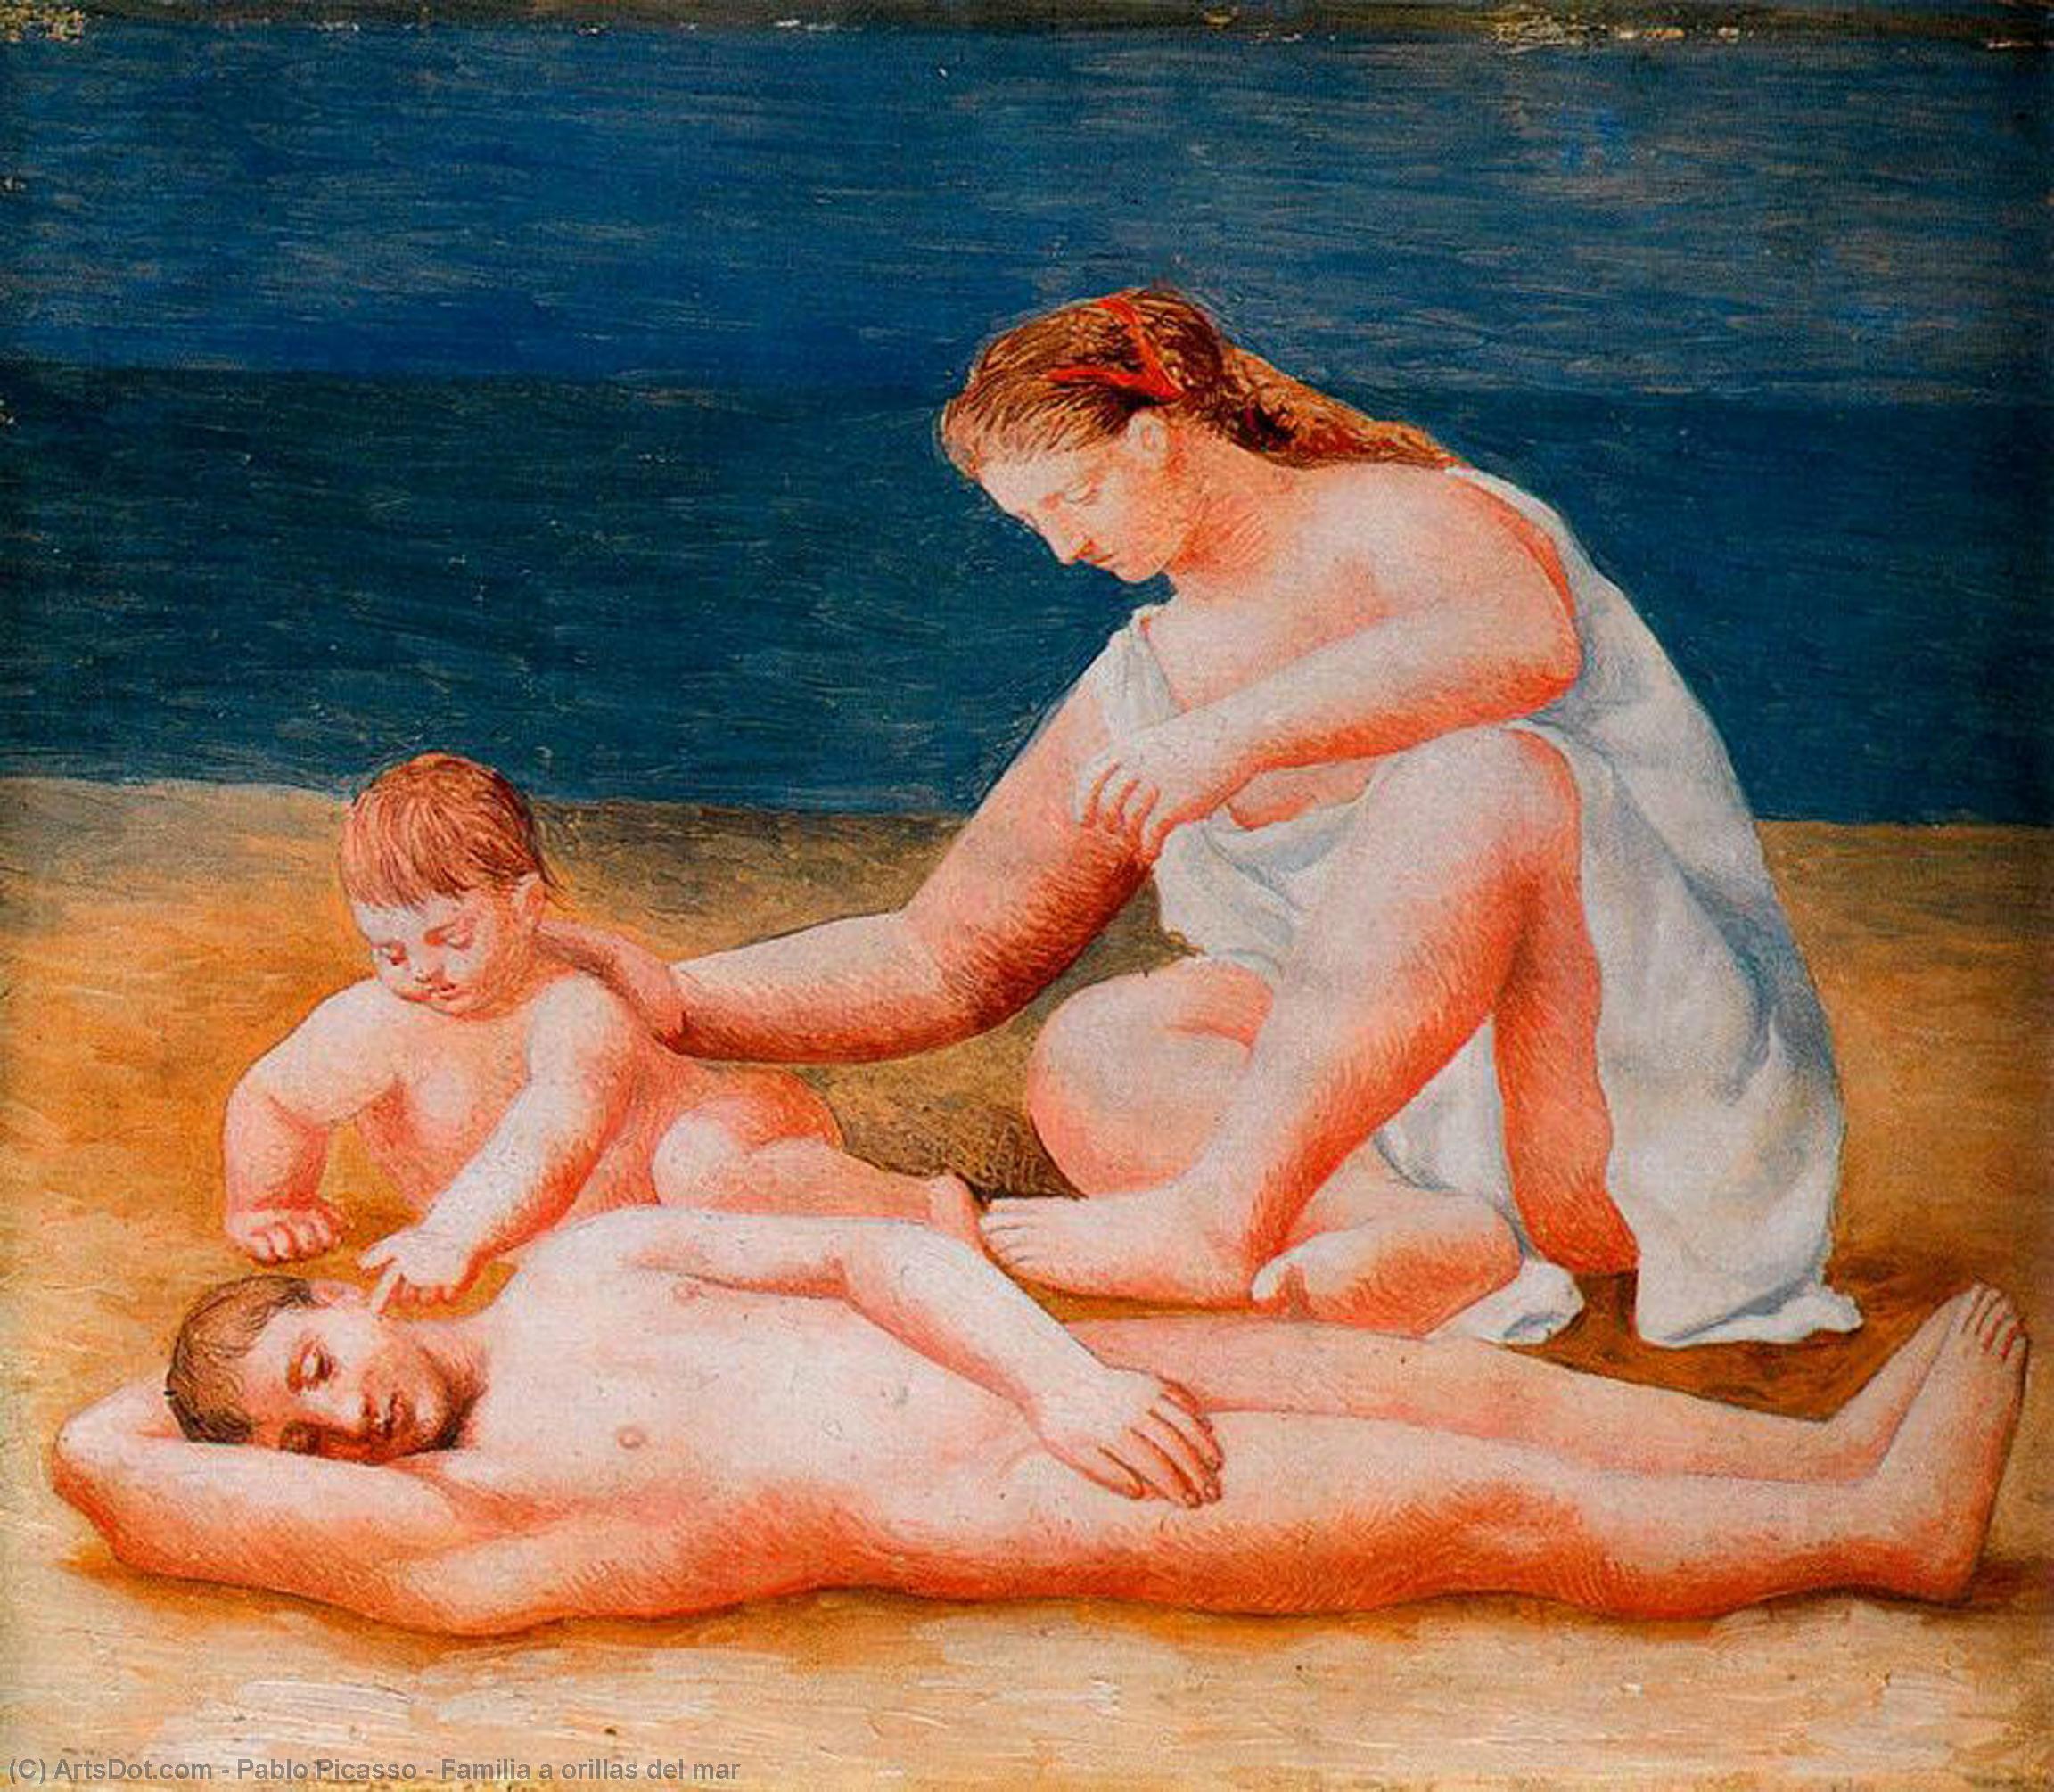 WikiOO.org - אנציקלופדיה לאמנויות יפות - ציור, יצירות אמנות Pablo Picasso - Familia a orillas del mar